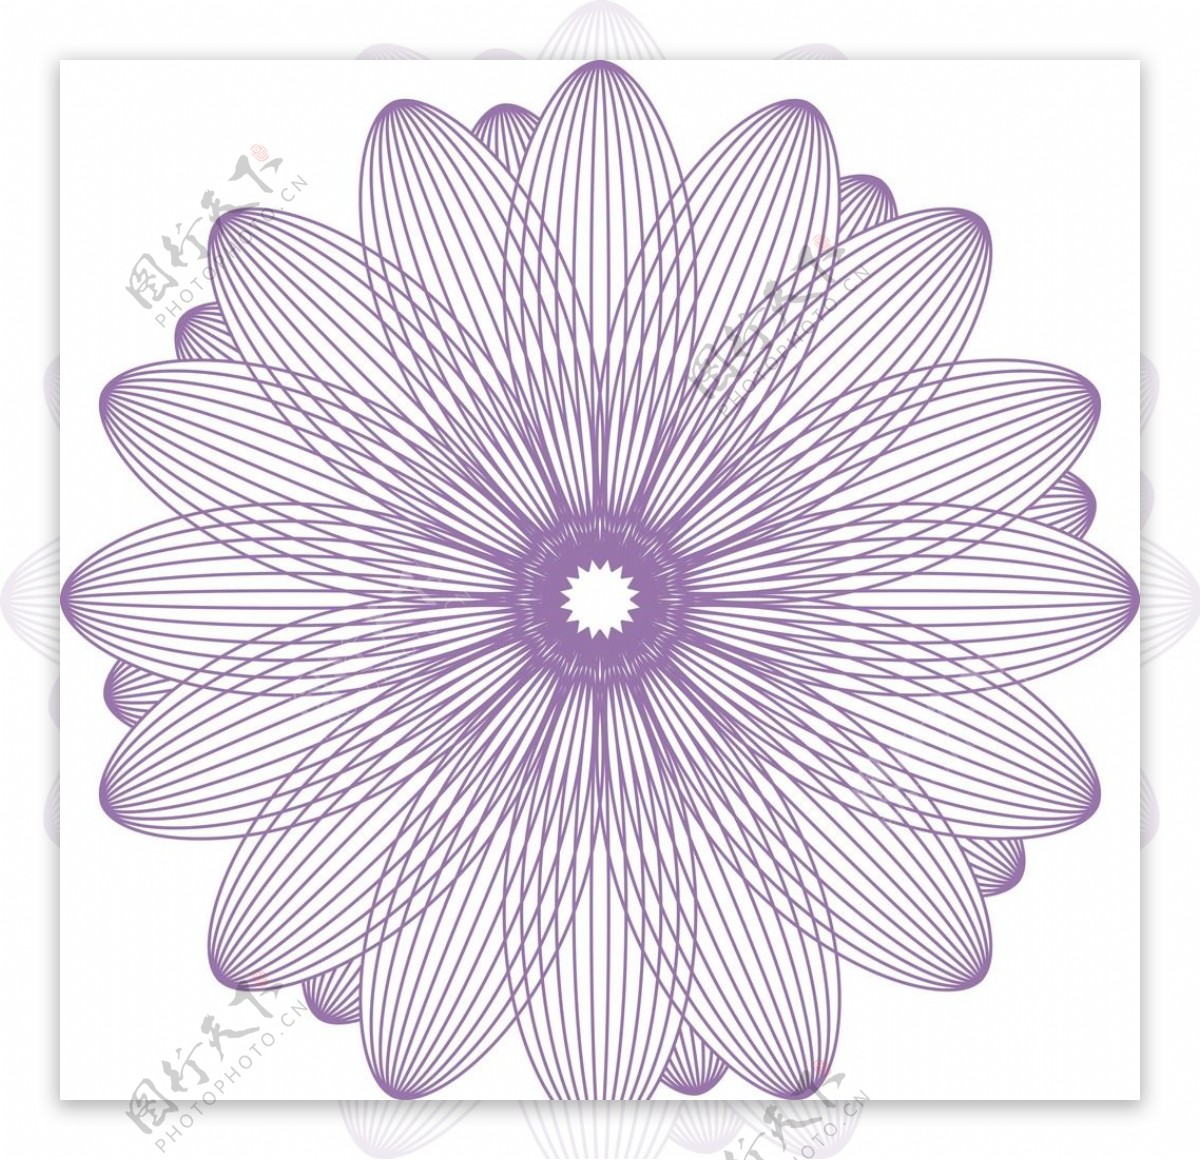 团花线条花紫色环形